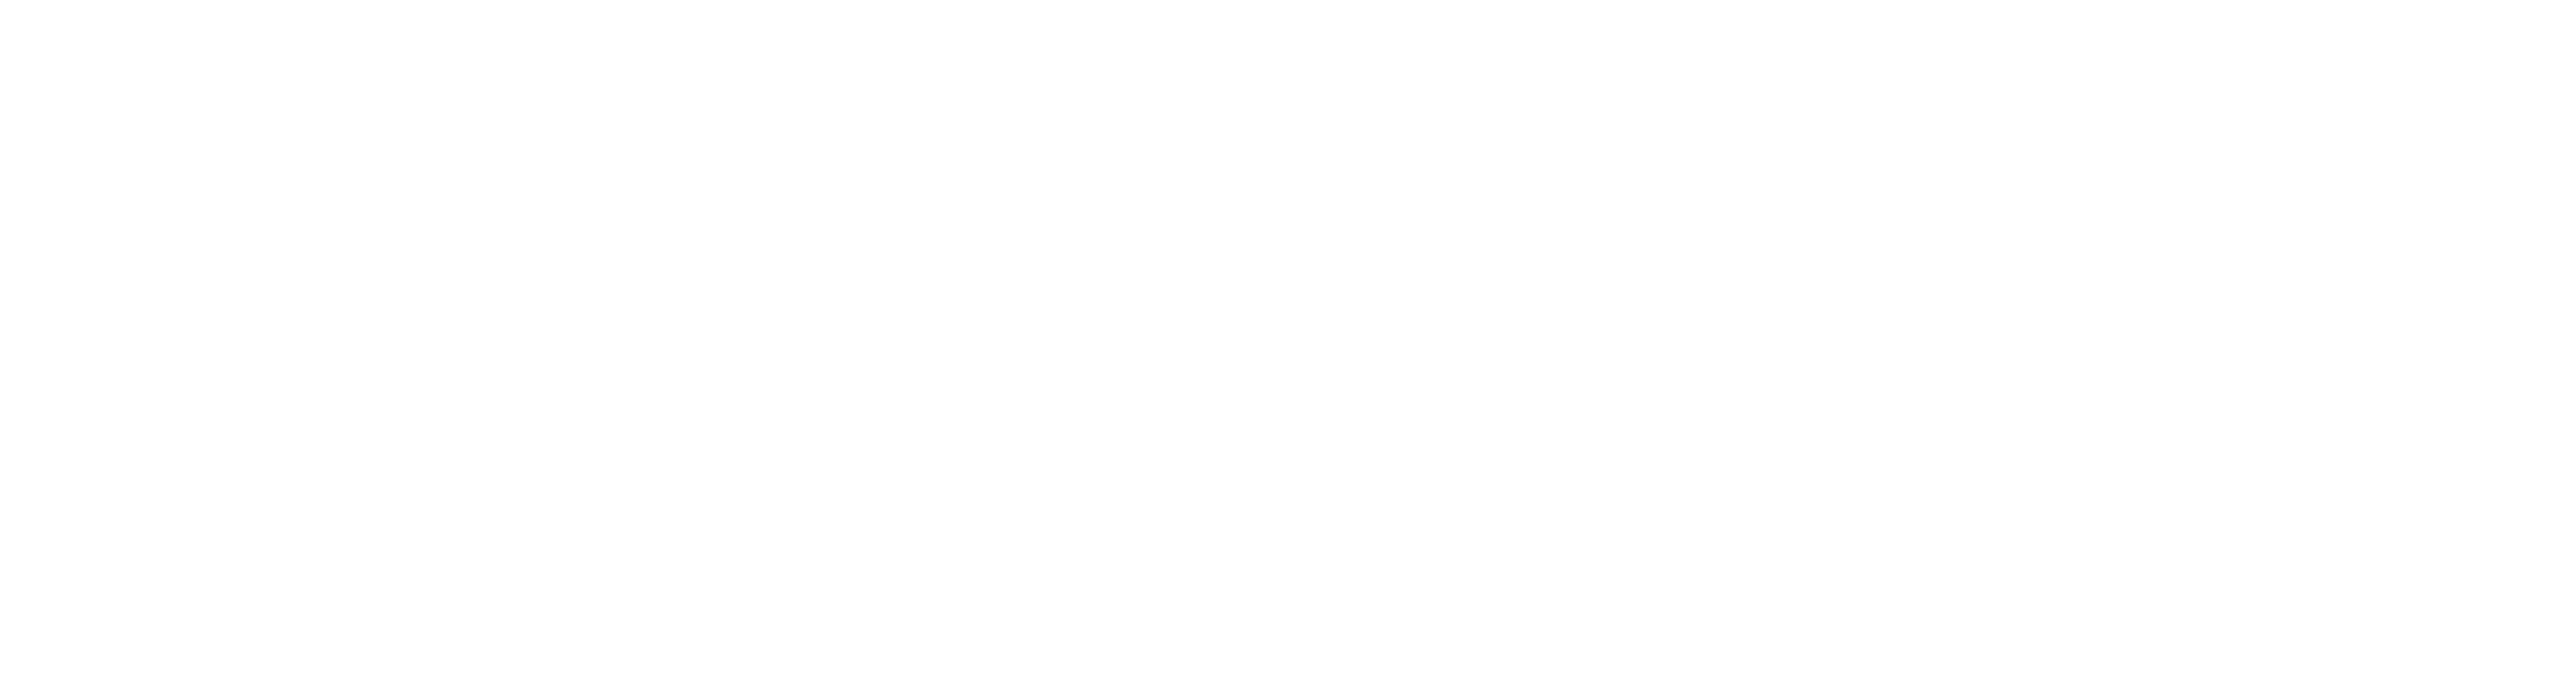 Database freedom - white logo with ATOM